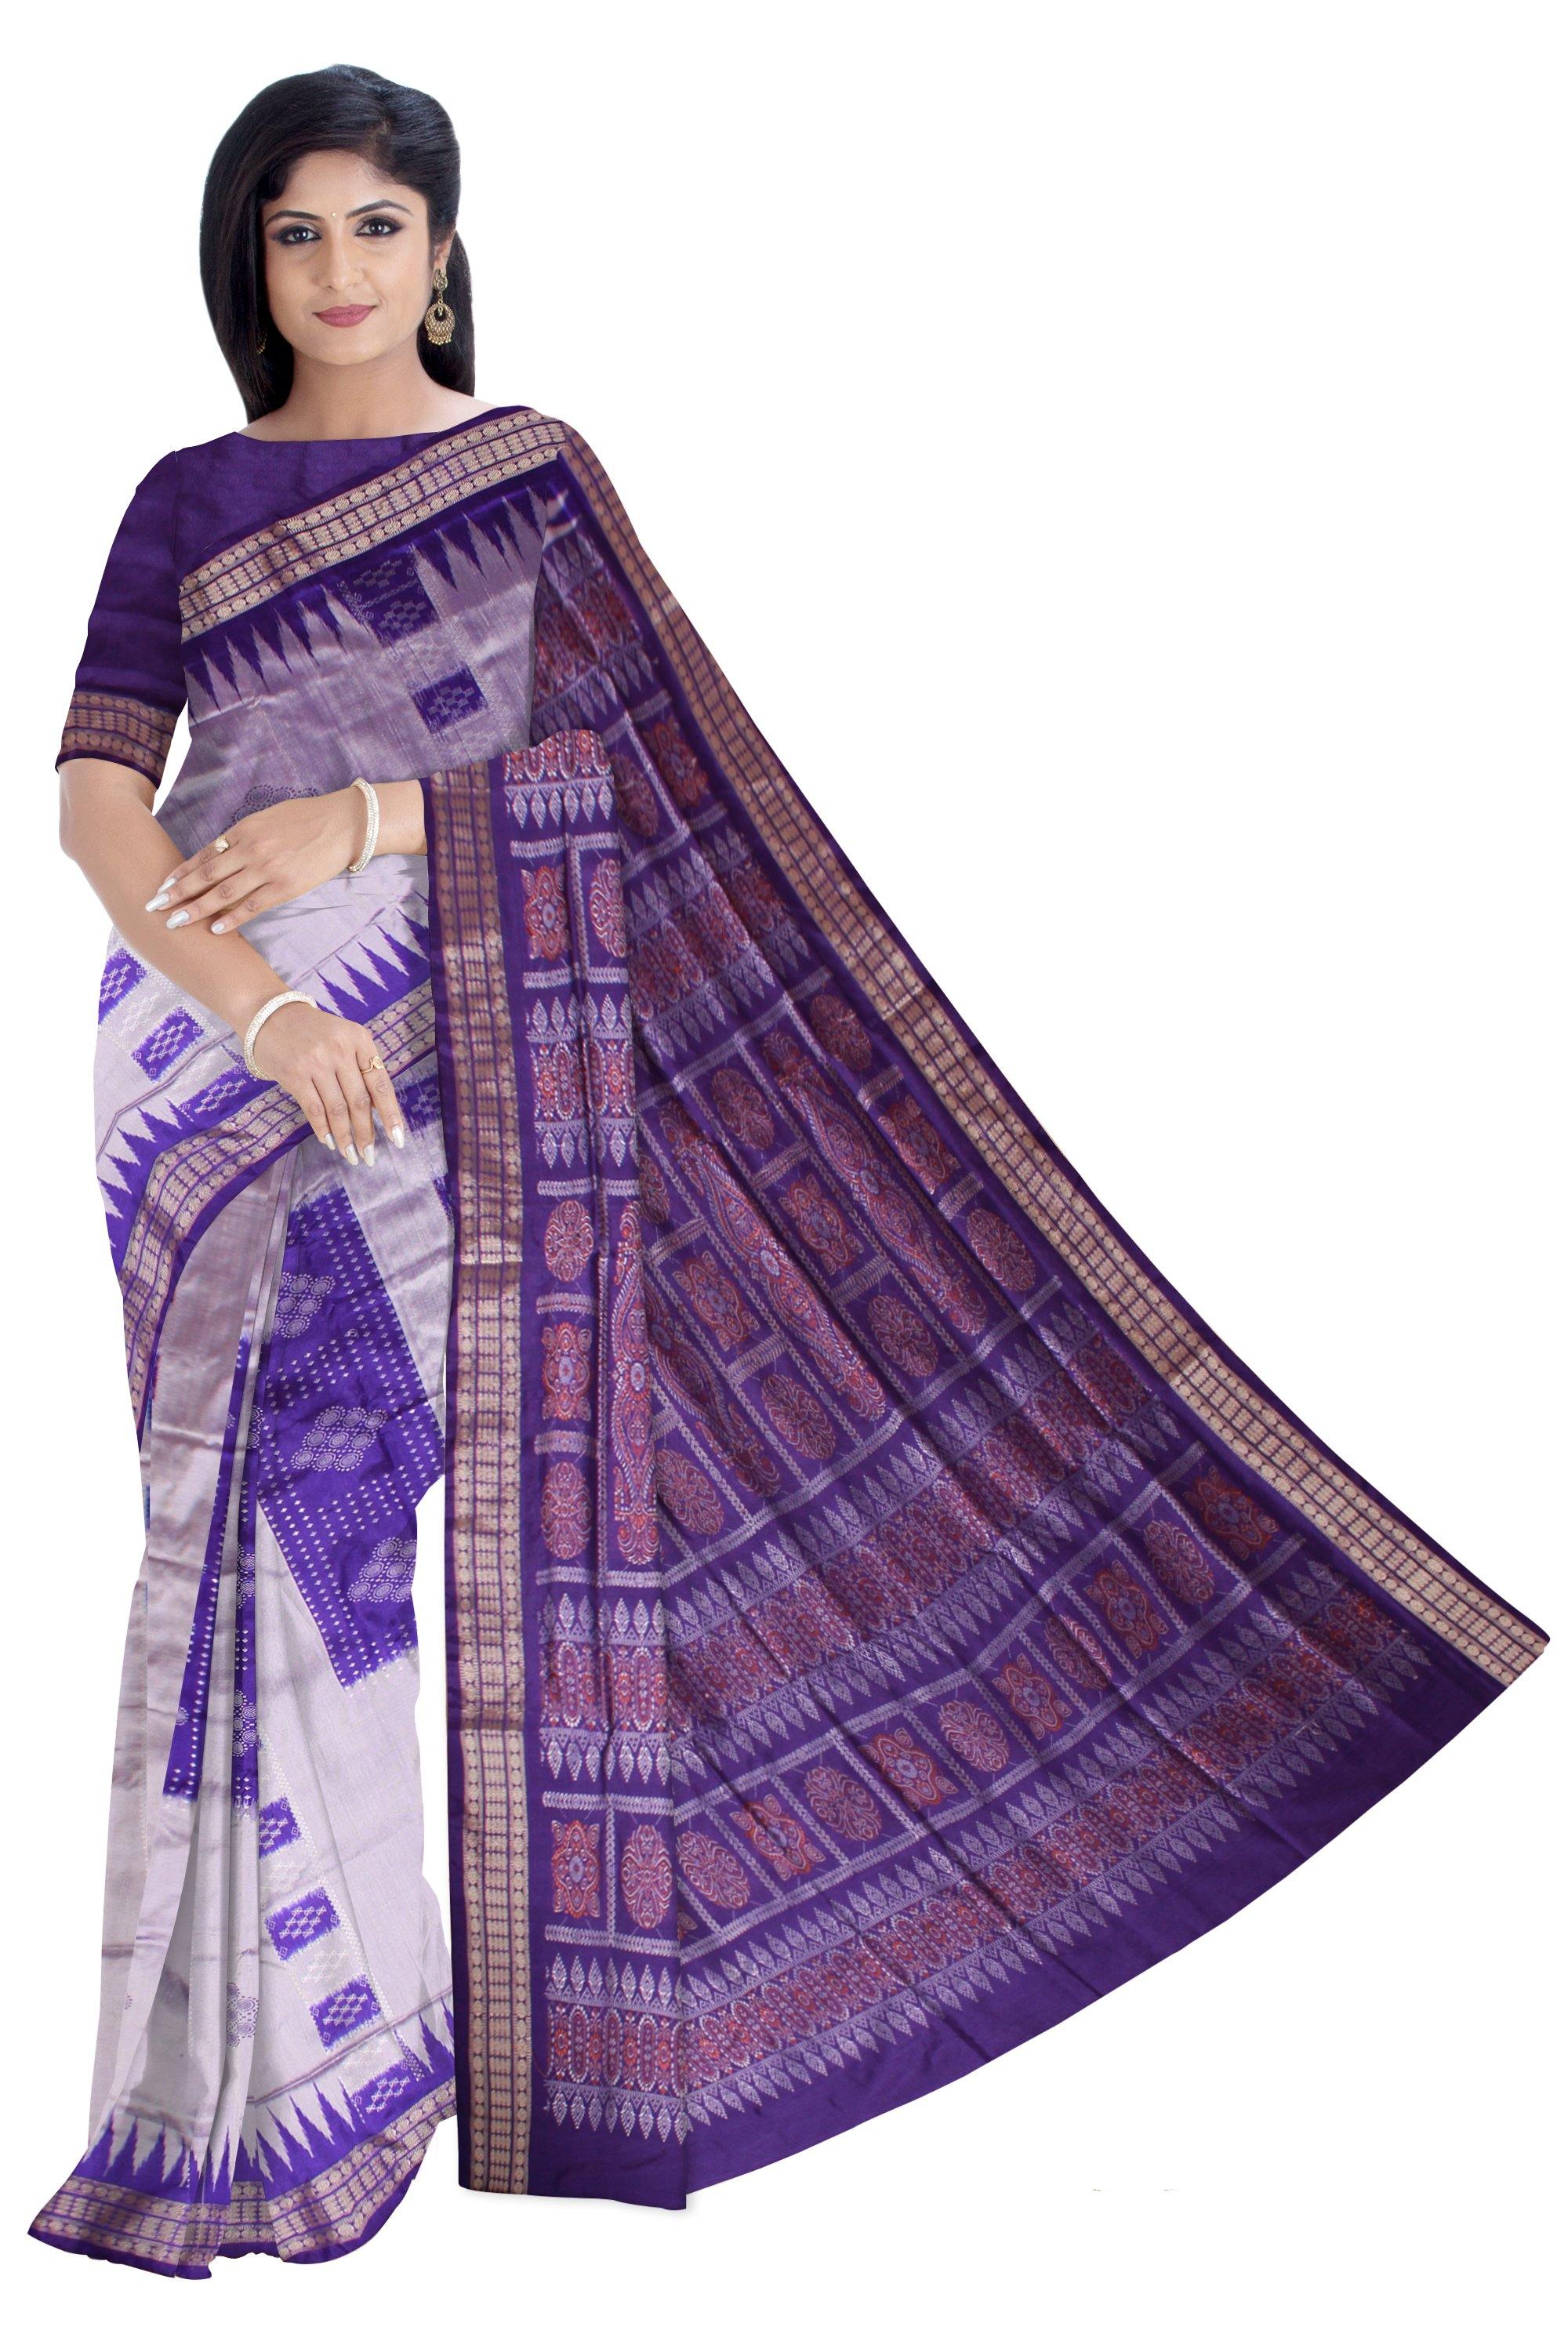 Sambalpuri gray blue chandua pata with blouse piece - Koshali Arts & Crafts Enterprise